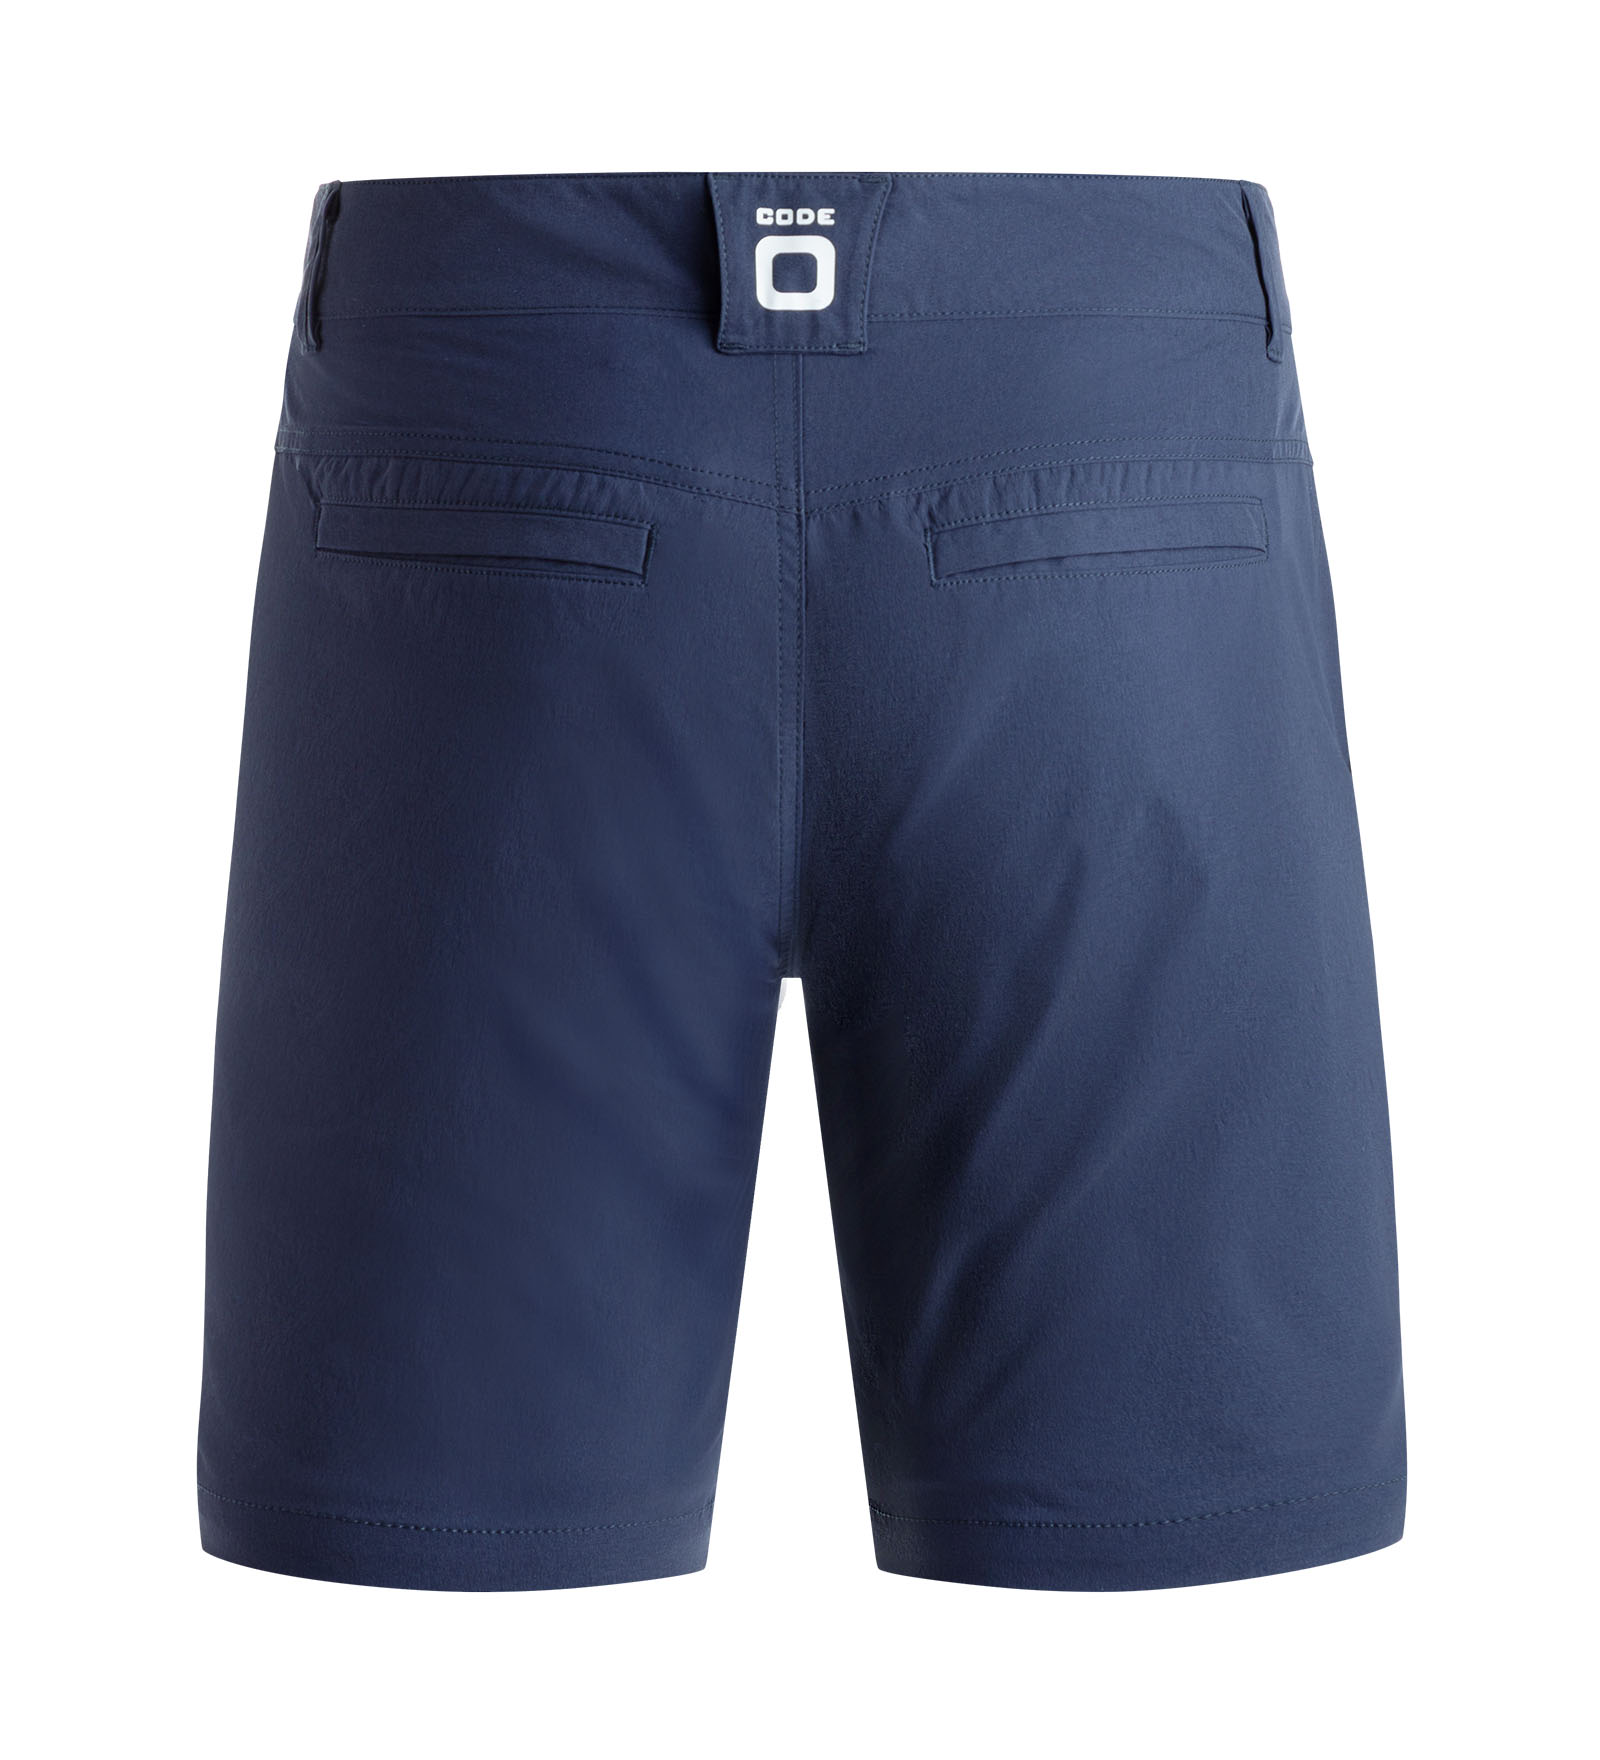 CODE-ZERO Shorts Men Club Navy Blue 3XL | CODE-ZERO